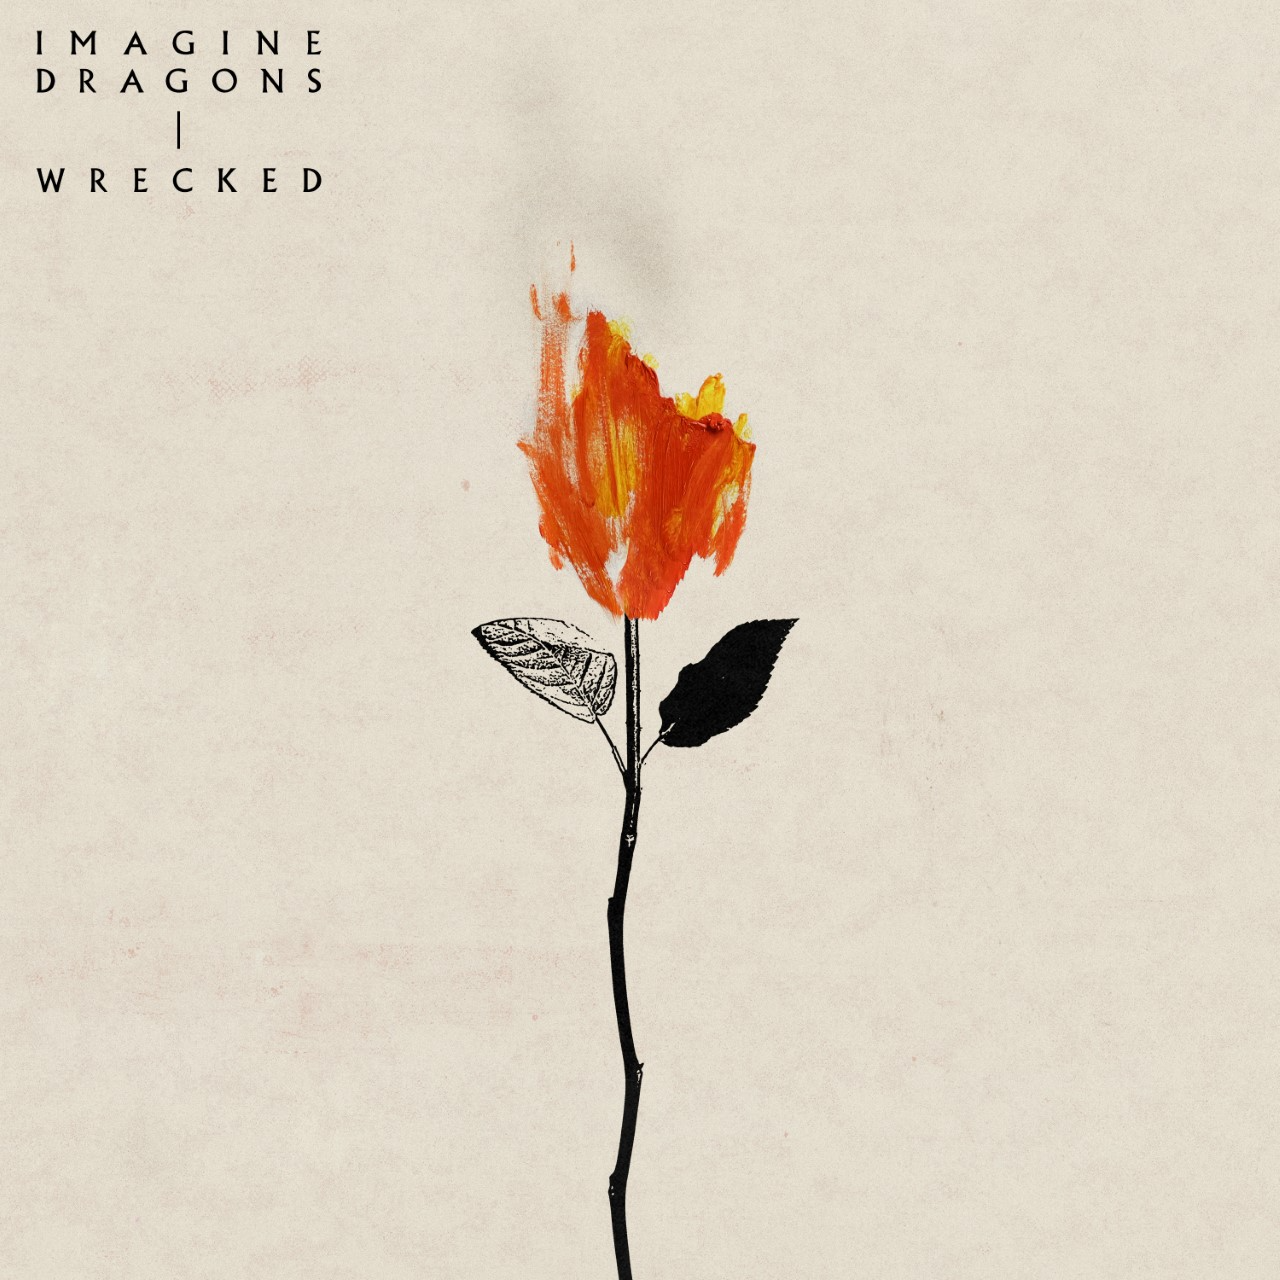 Huyền thoại Bad Liar - Imagine Dragons tiếp tục tung single mới mang tên Wrecked